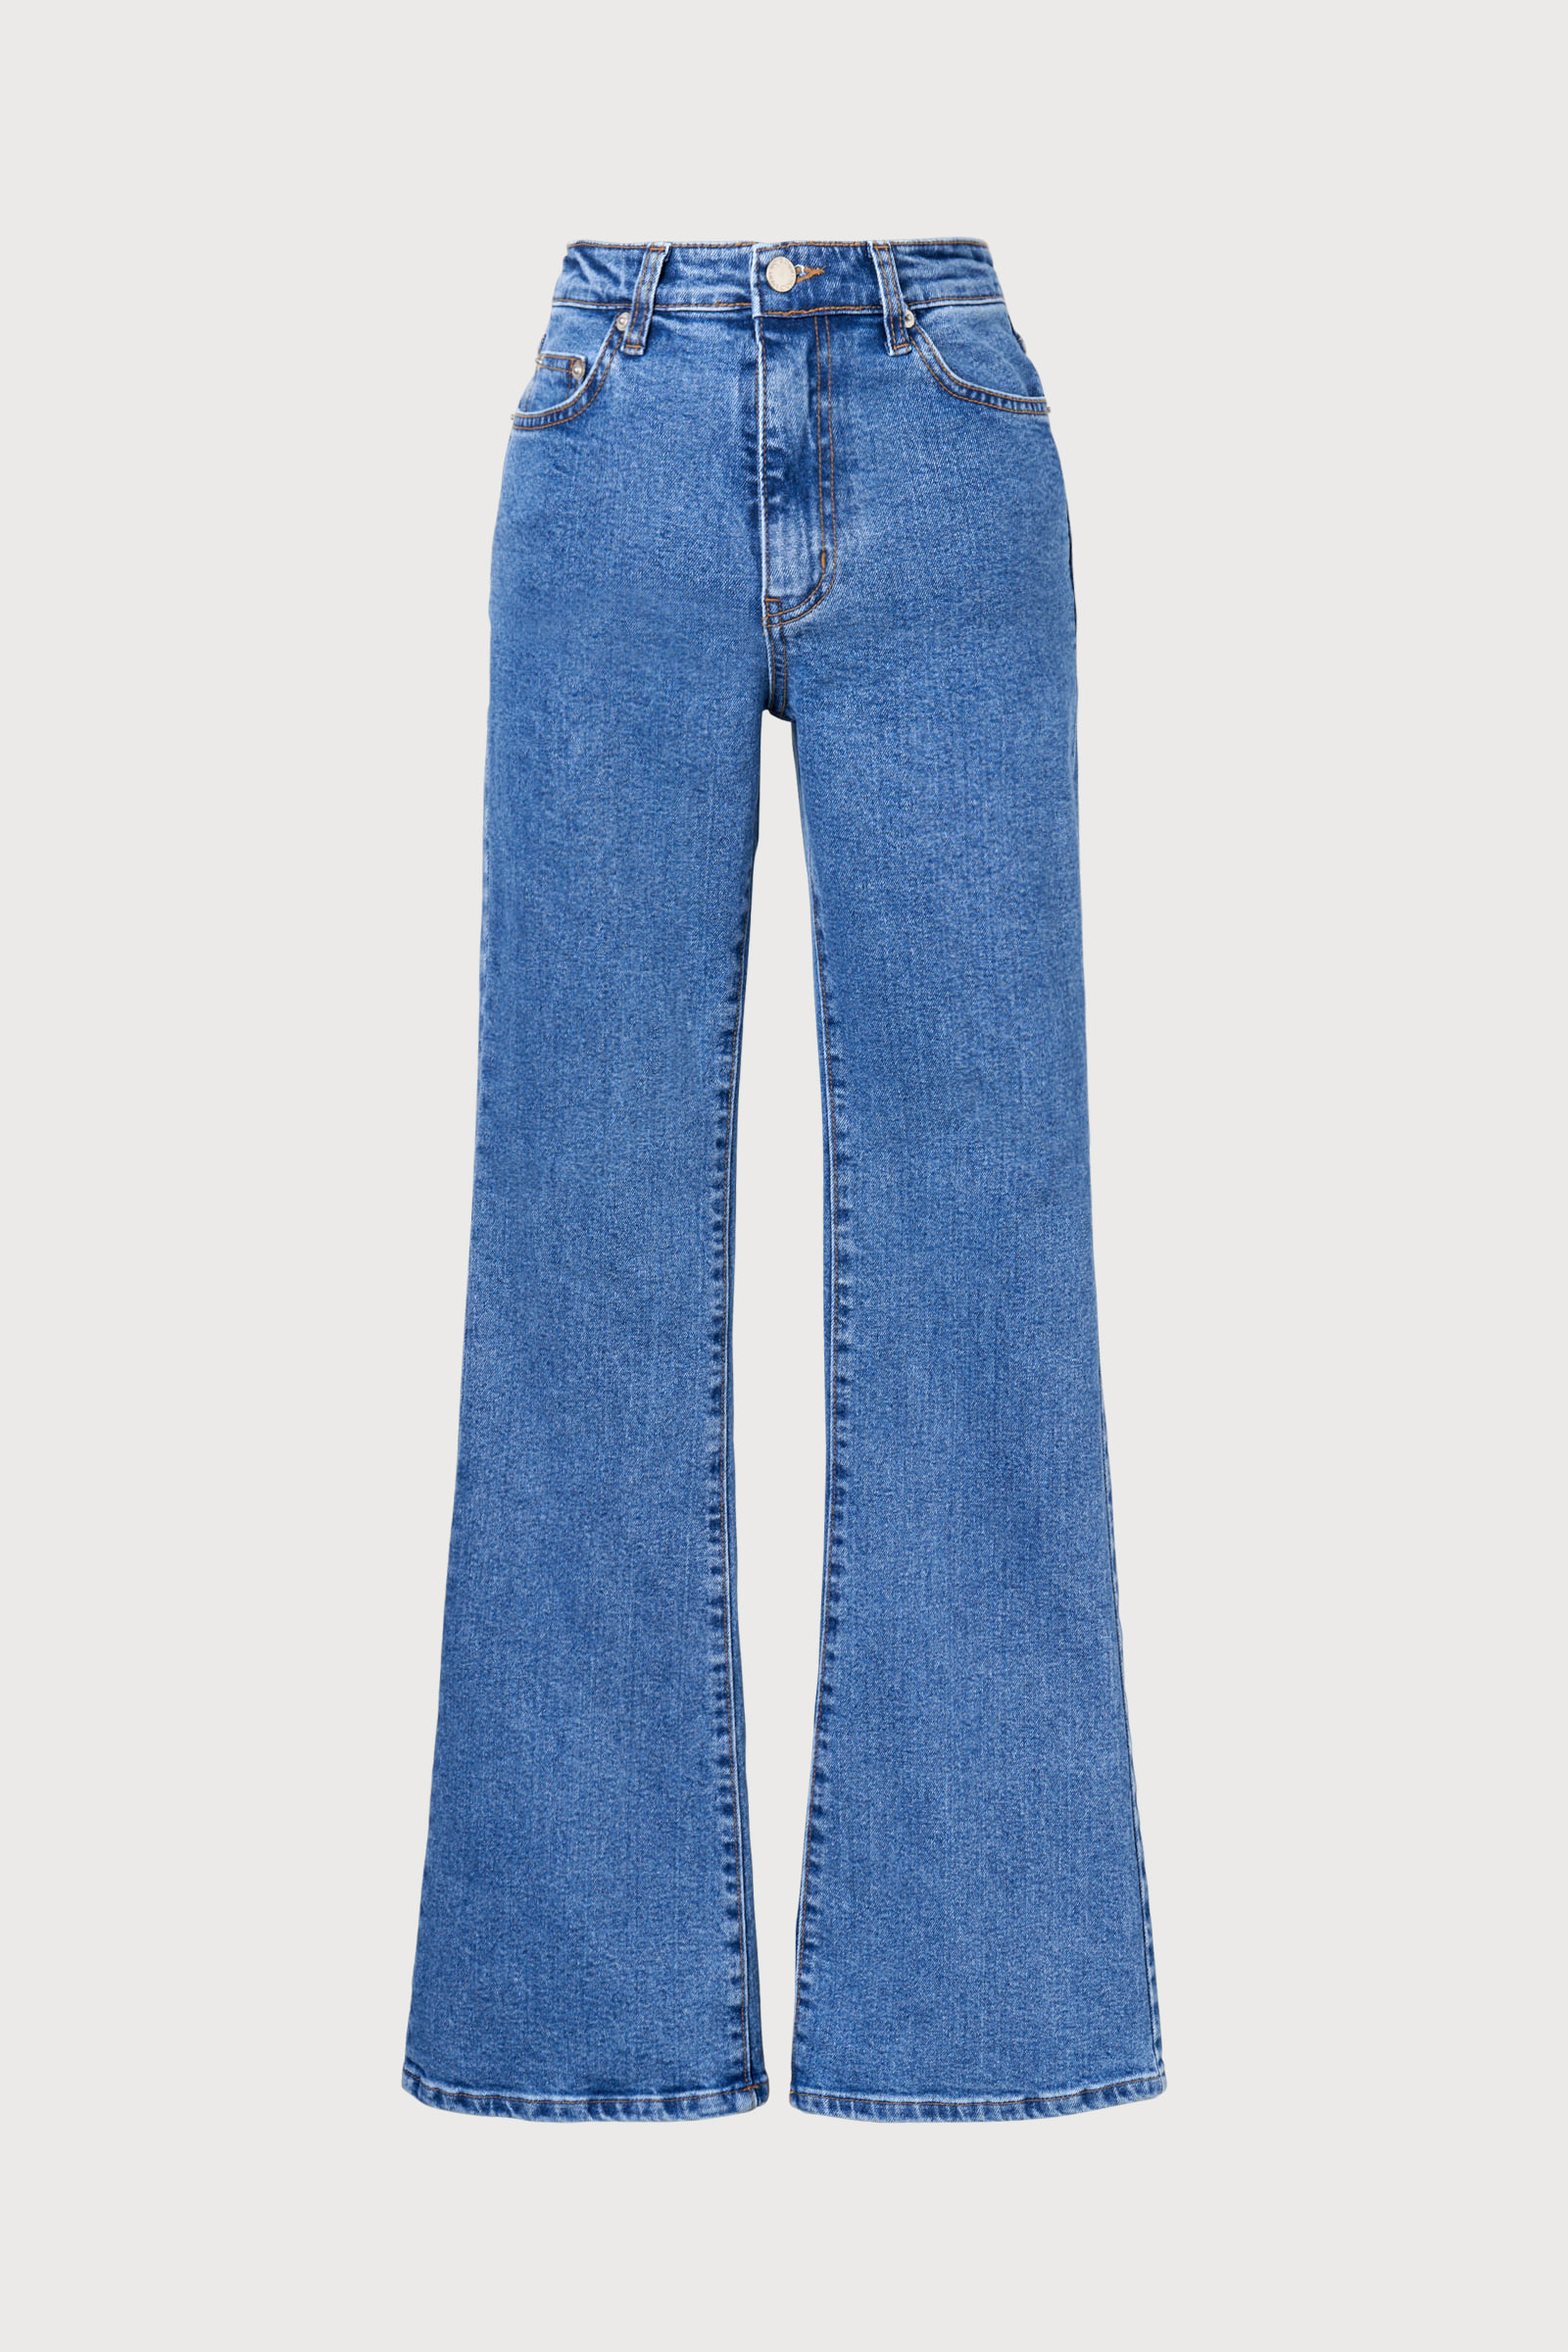 Part.5 Bootscut jeans (denim)